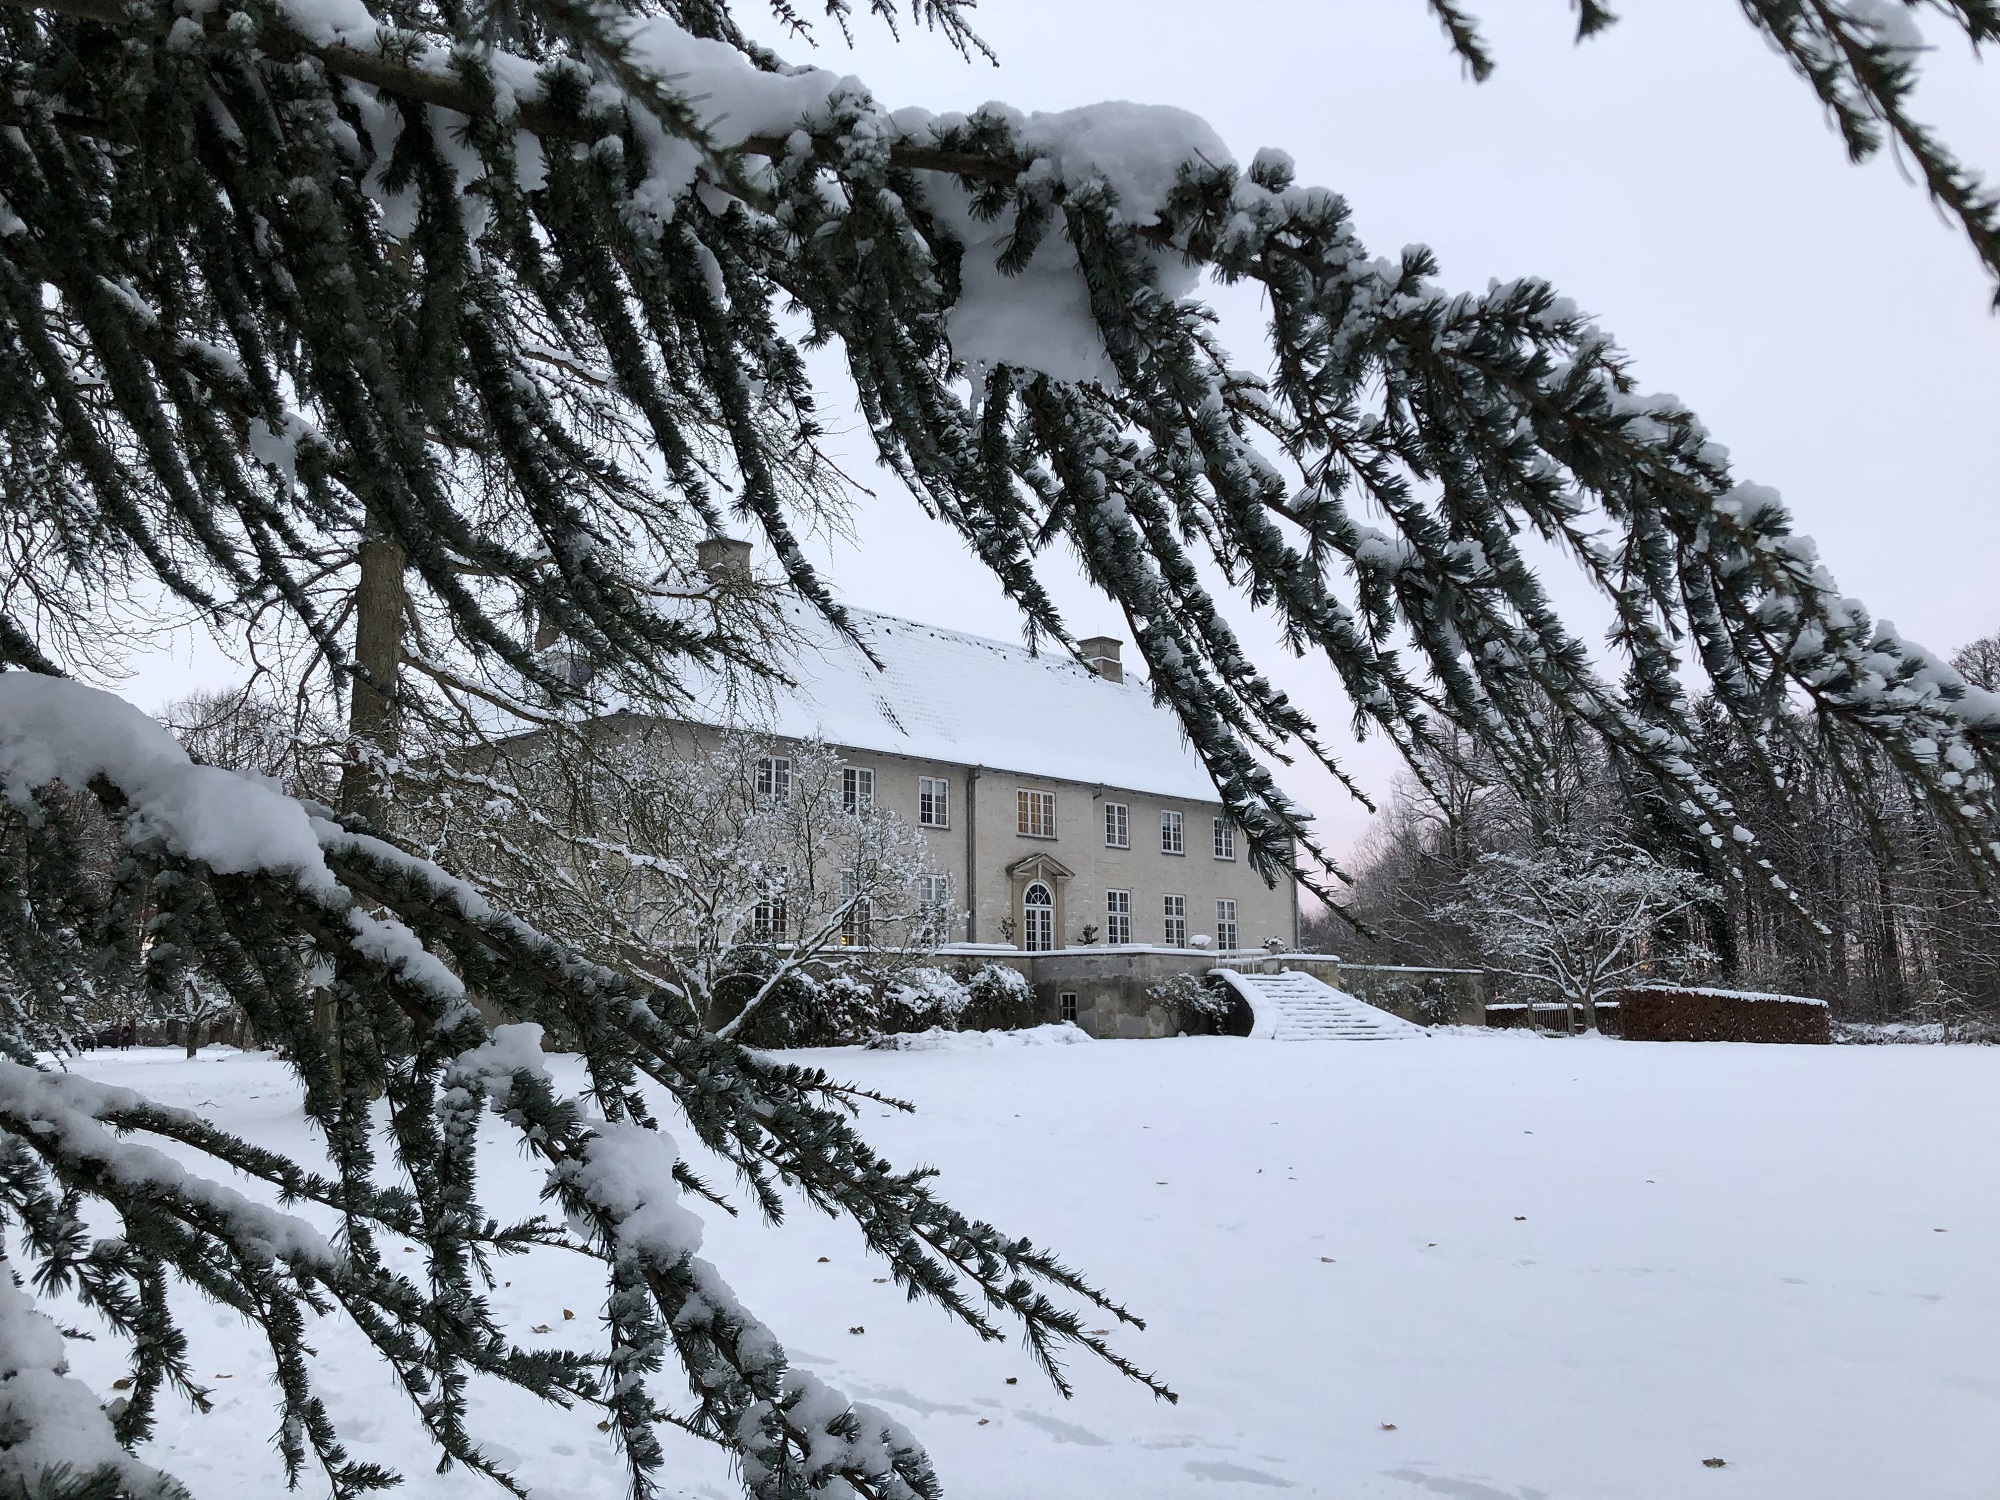 Et malerisk KompositionsCamp-retræte beliggende i et snedækket landskab med et storslået hus og et smukt træ, der er silhuet af vinterhimlen.